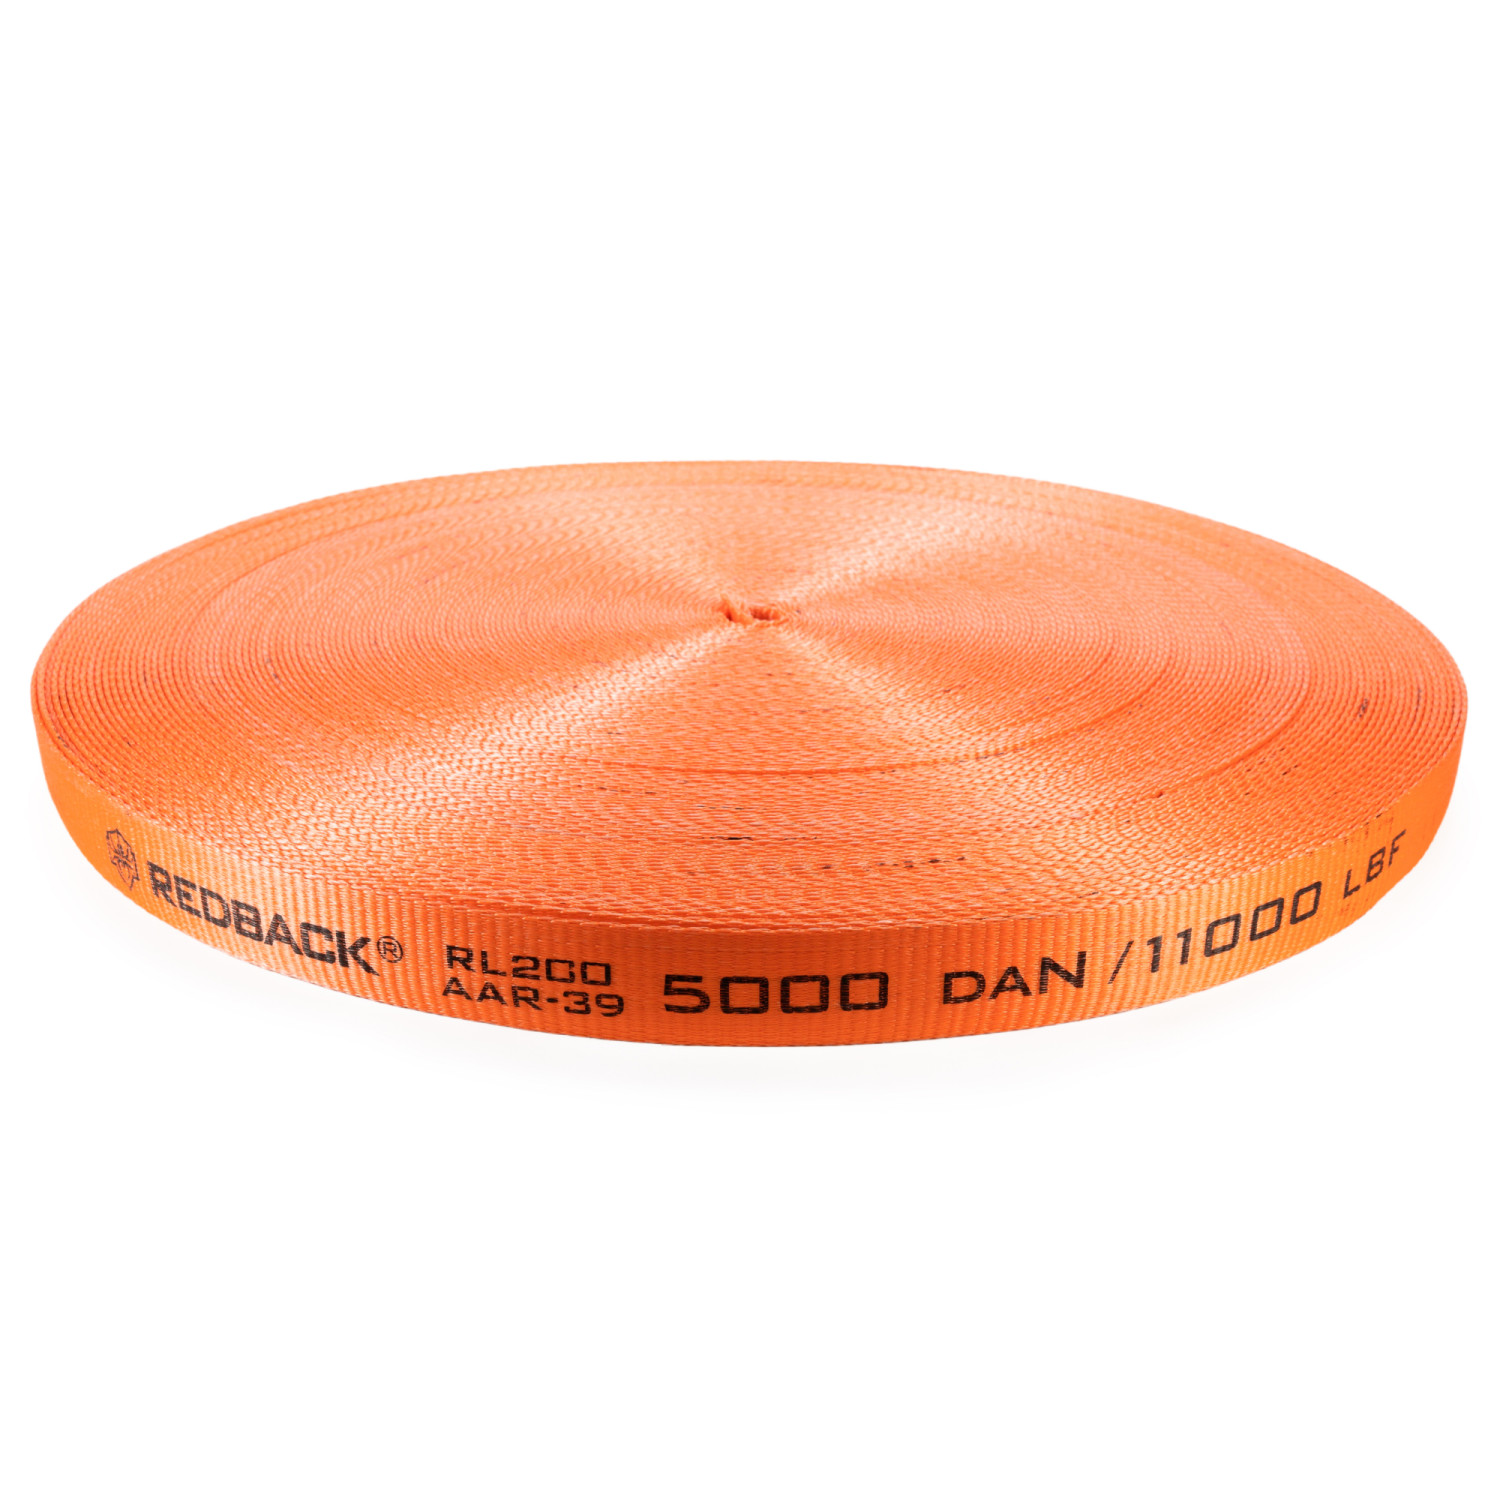 Cordex - Twine - 4750' / 400 - Orange